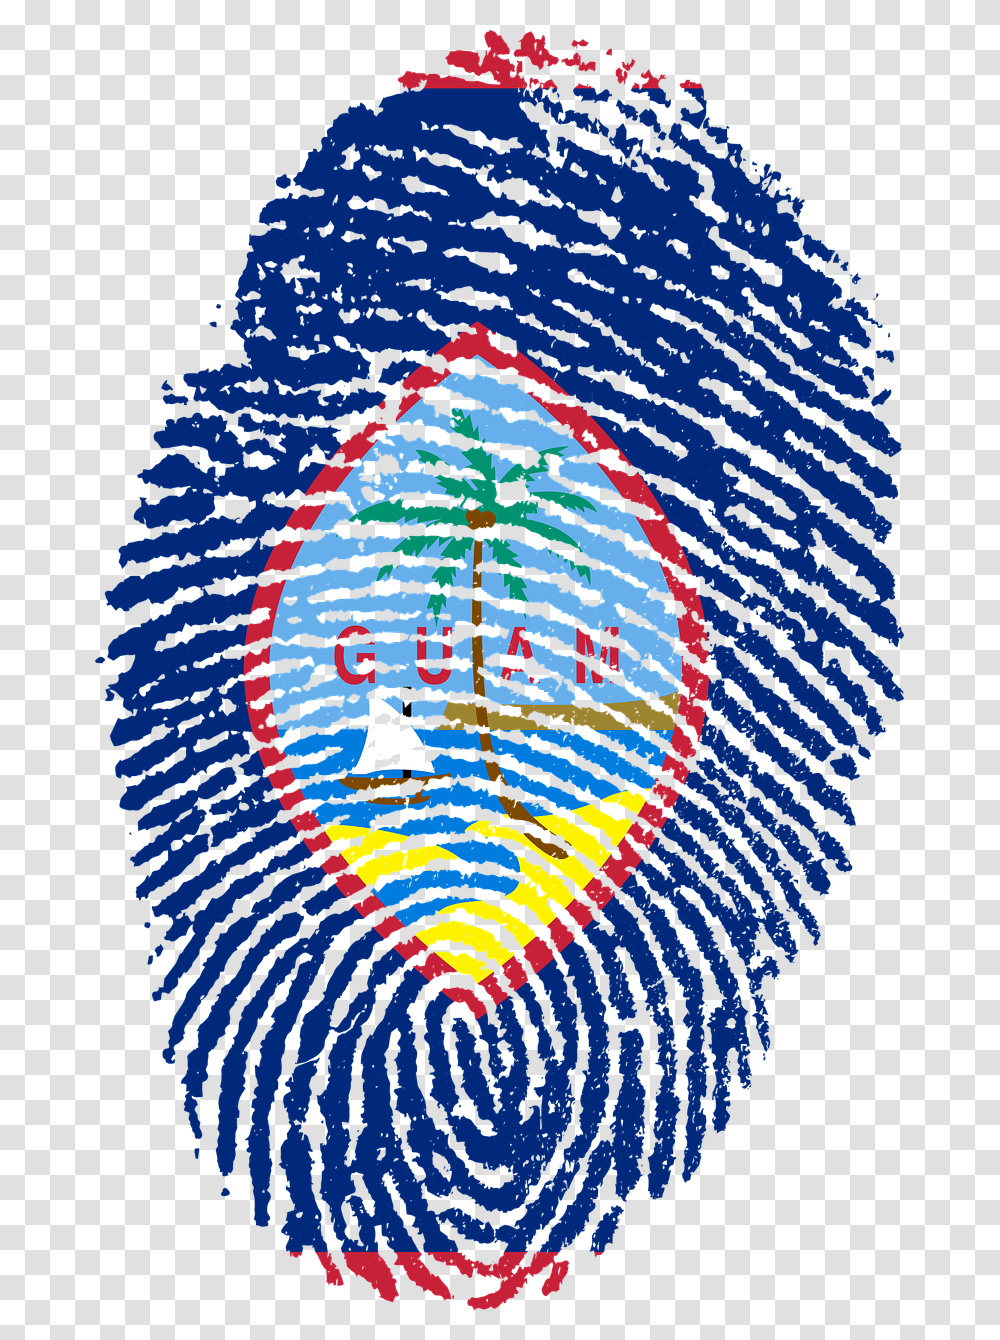 Bangladesh Flag Fingerprint, Sphere, Pattern Transparent Png